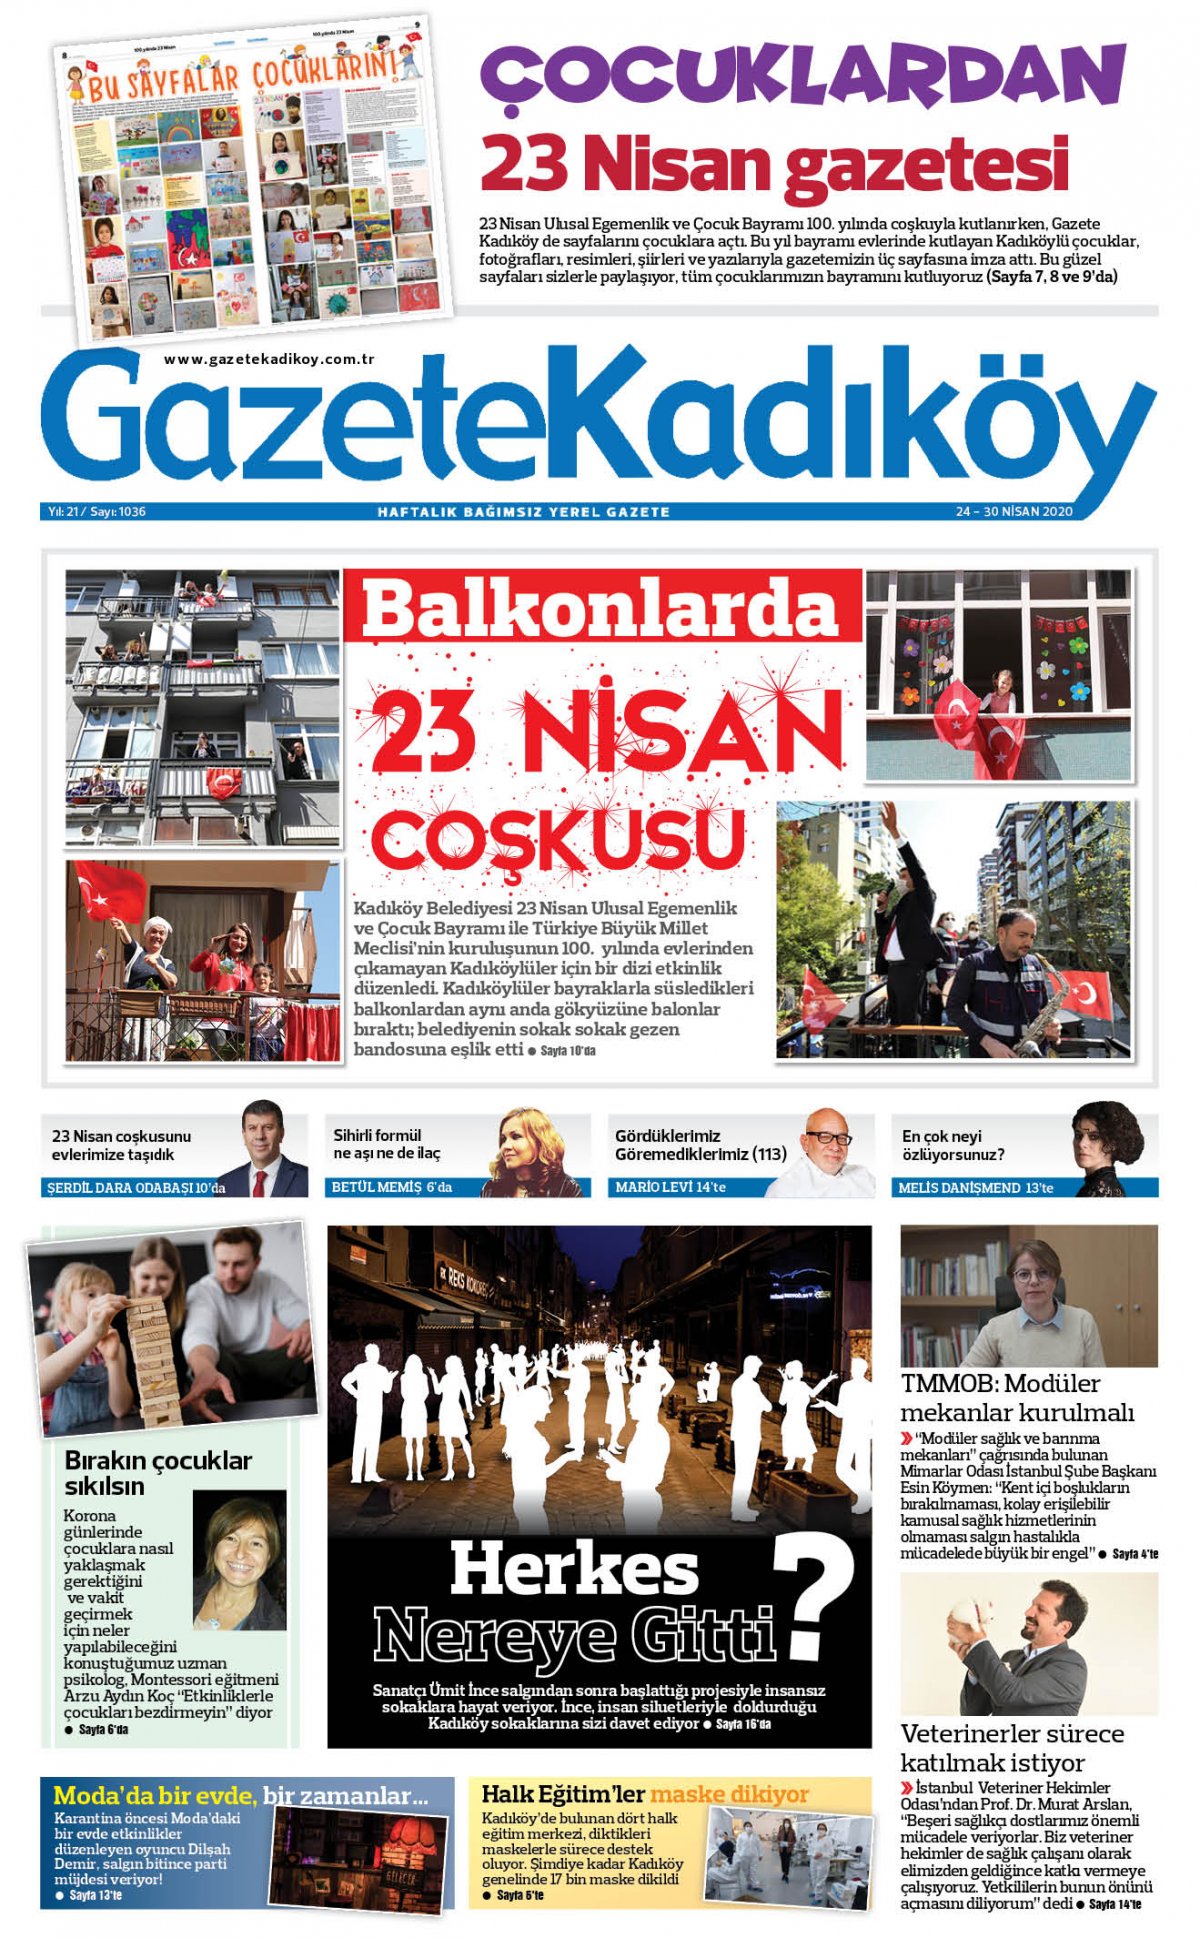 Gazete Kadıköy - 1036. Sayı